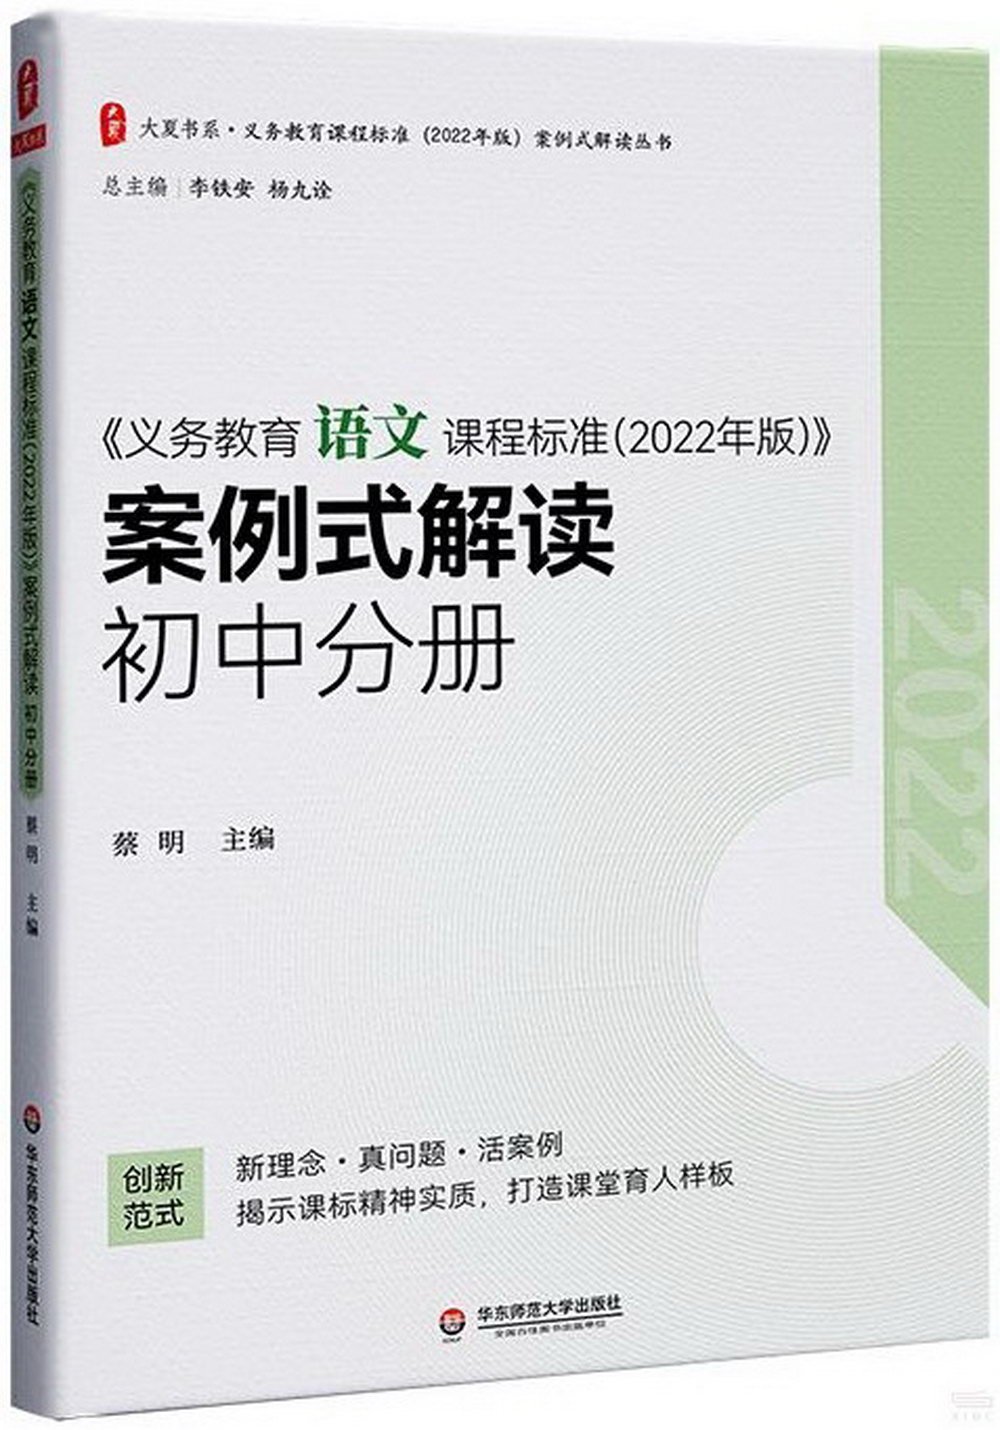 《義務教育語文課程標準（2022年版）》案例式解讀 初中分冊